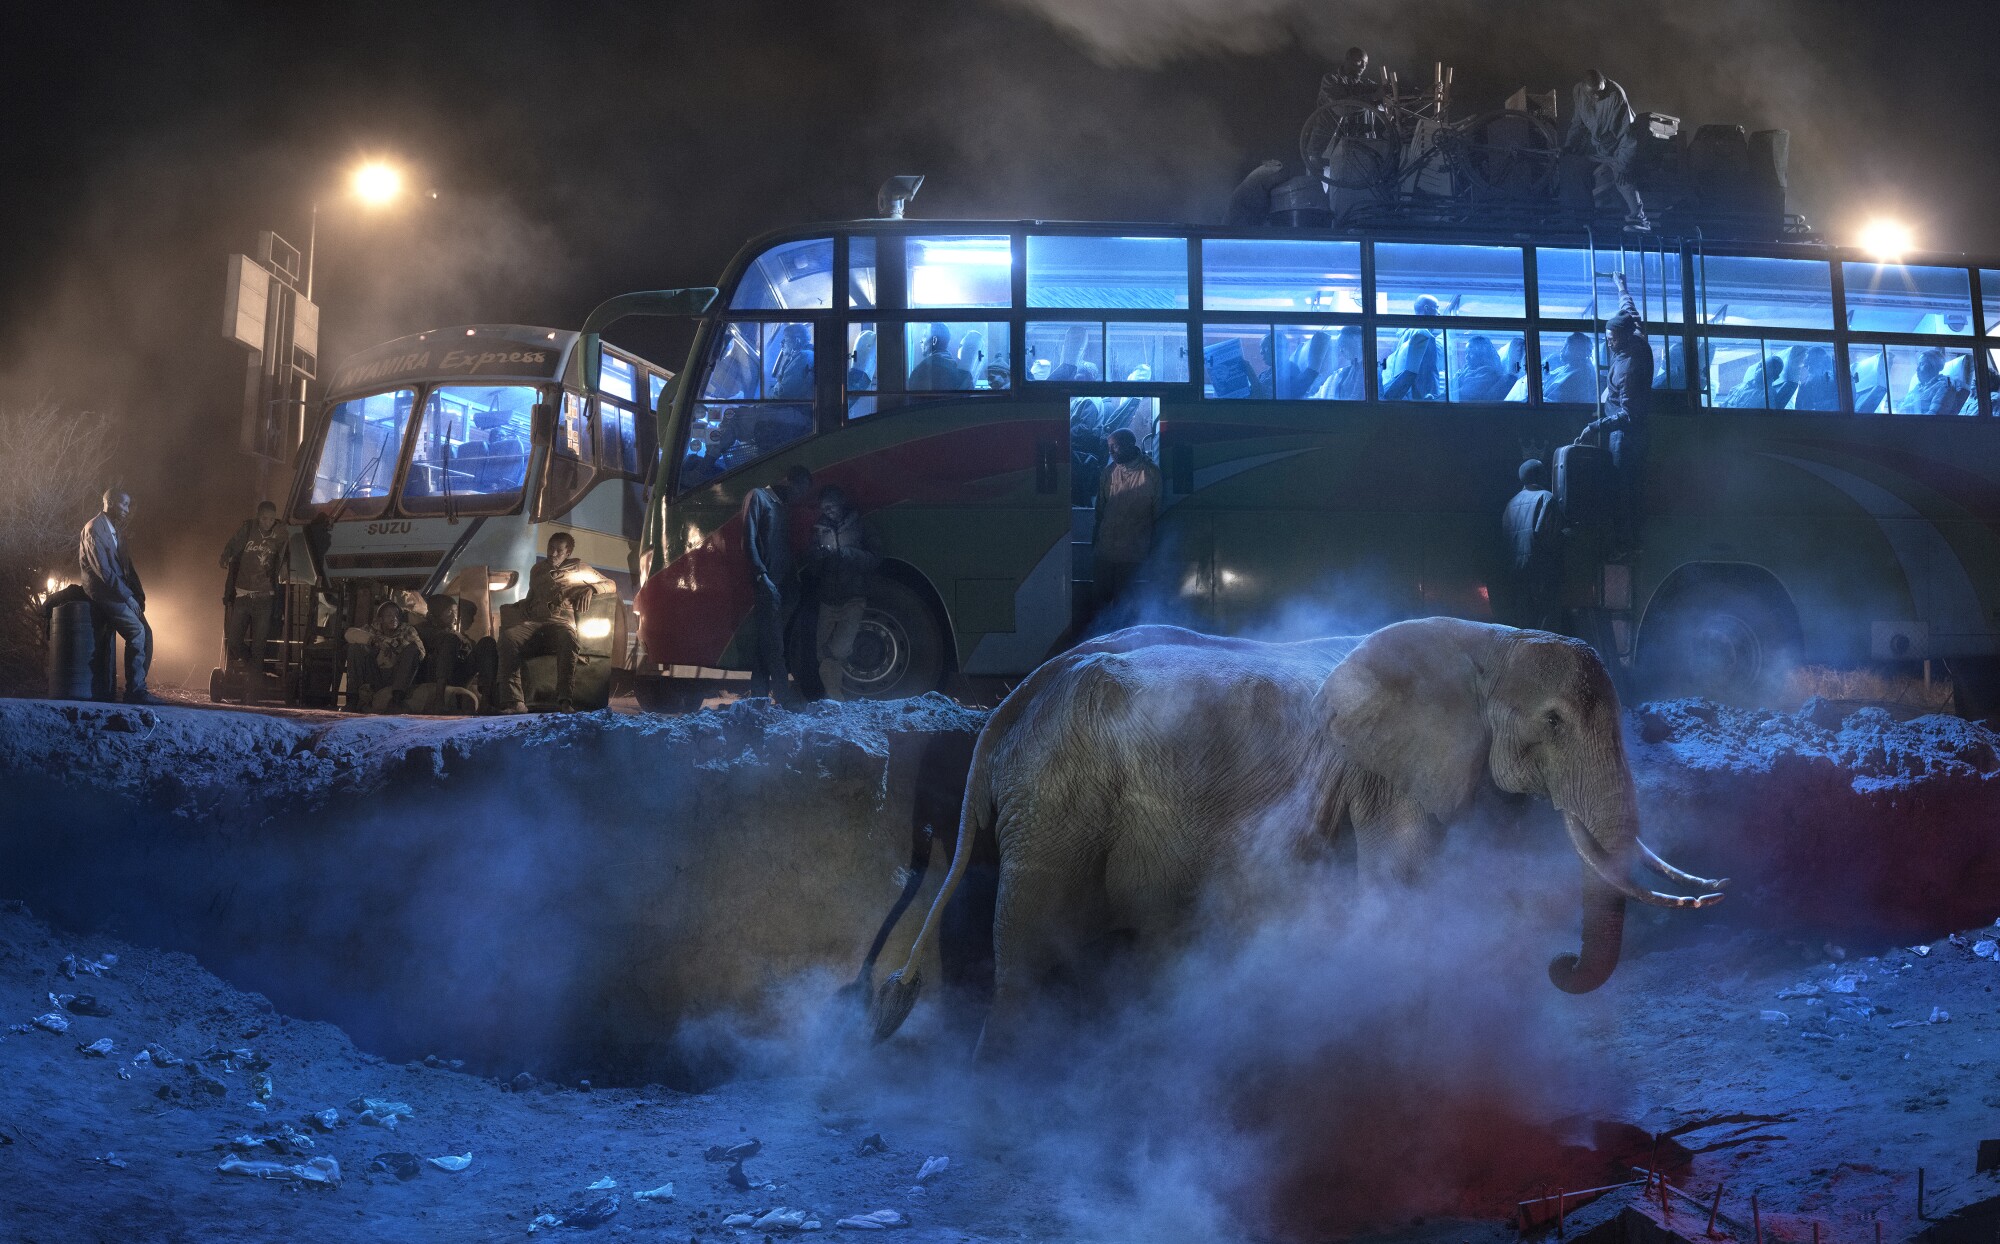 "Автовокзал со слоном в пыли" Ник Брандт (2019, архивный пигментный отпечаток)